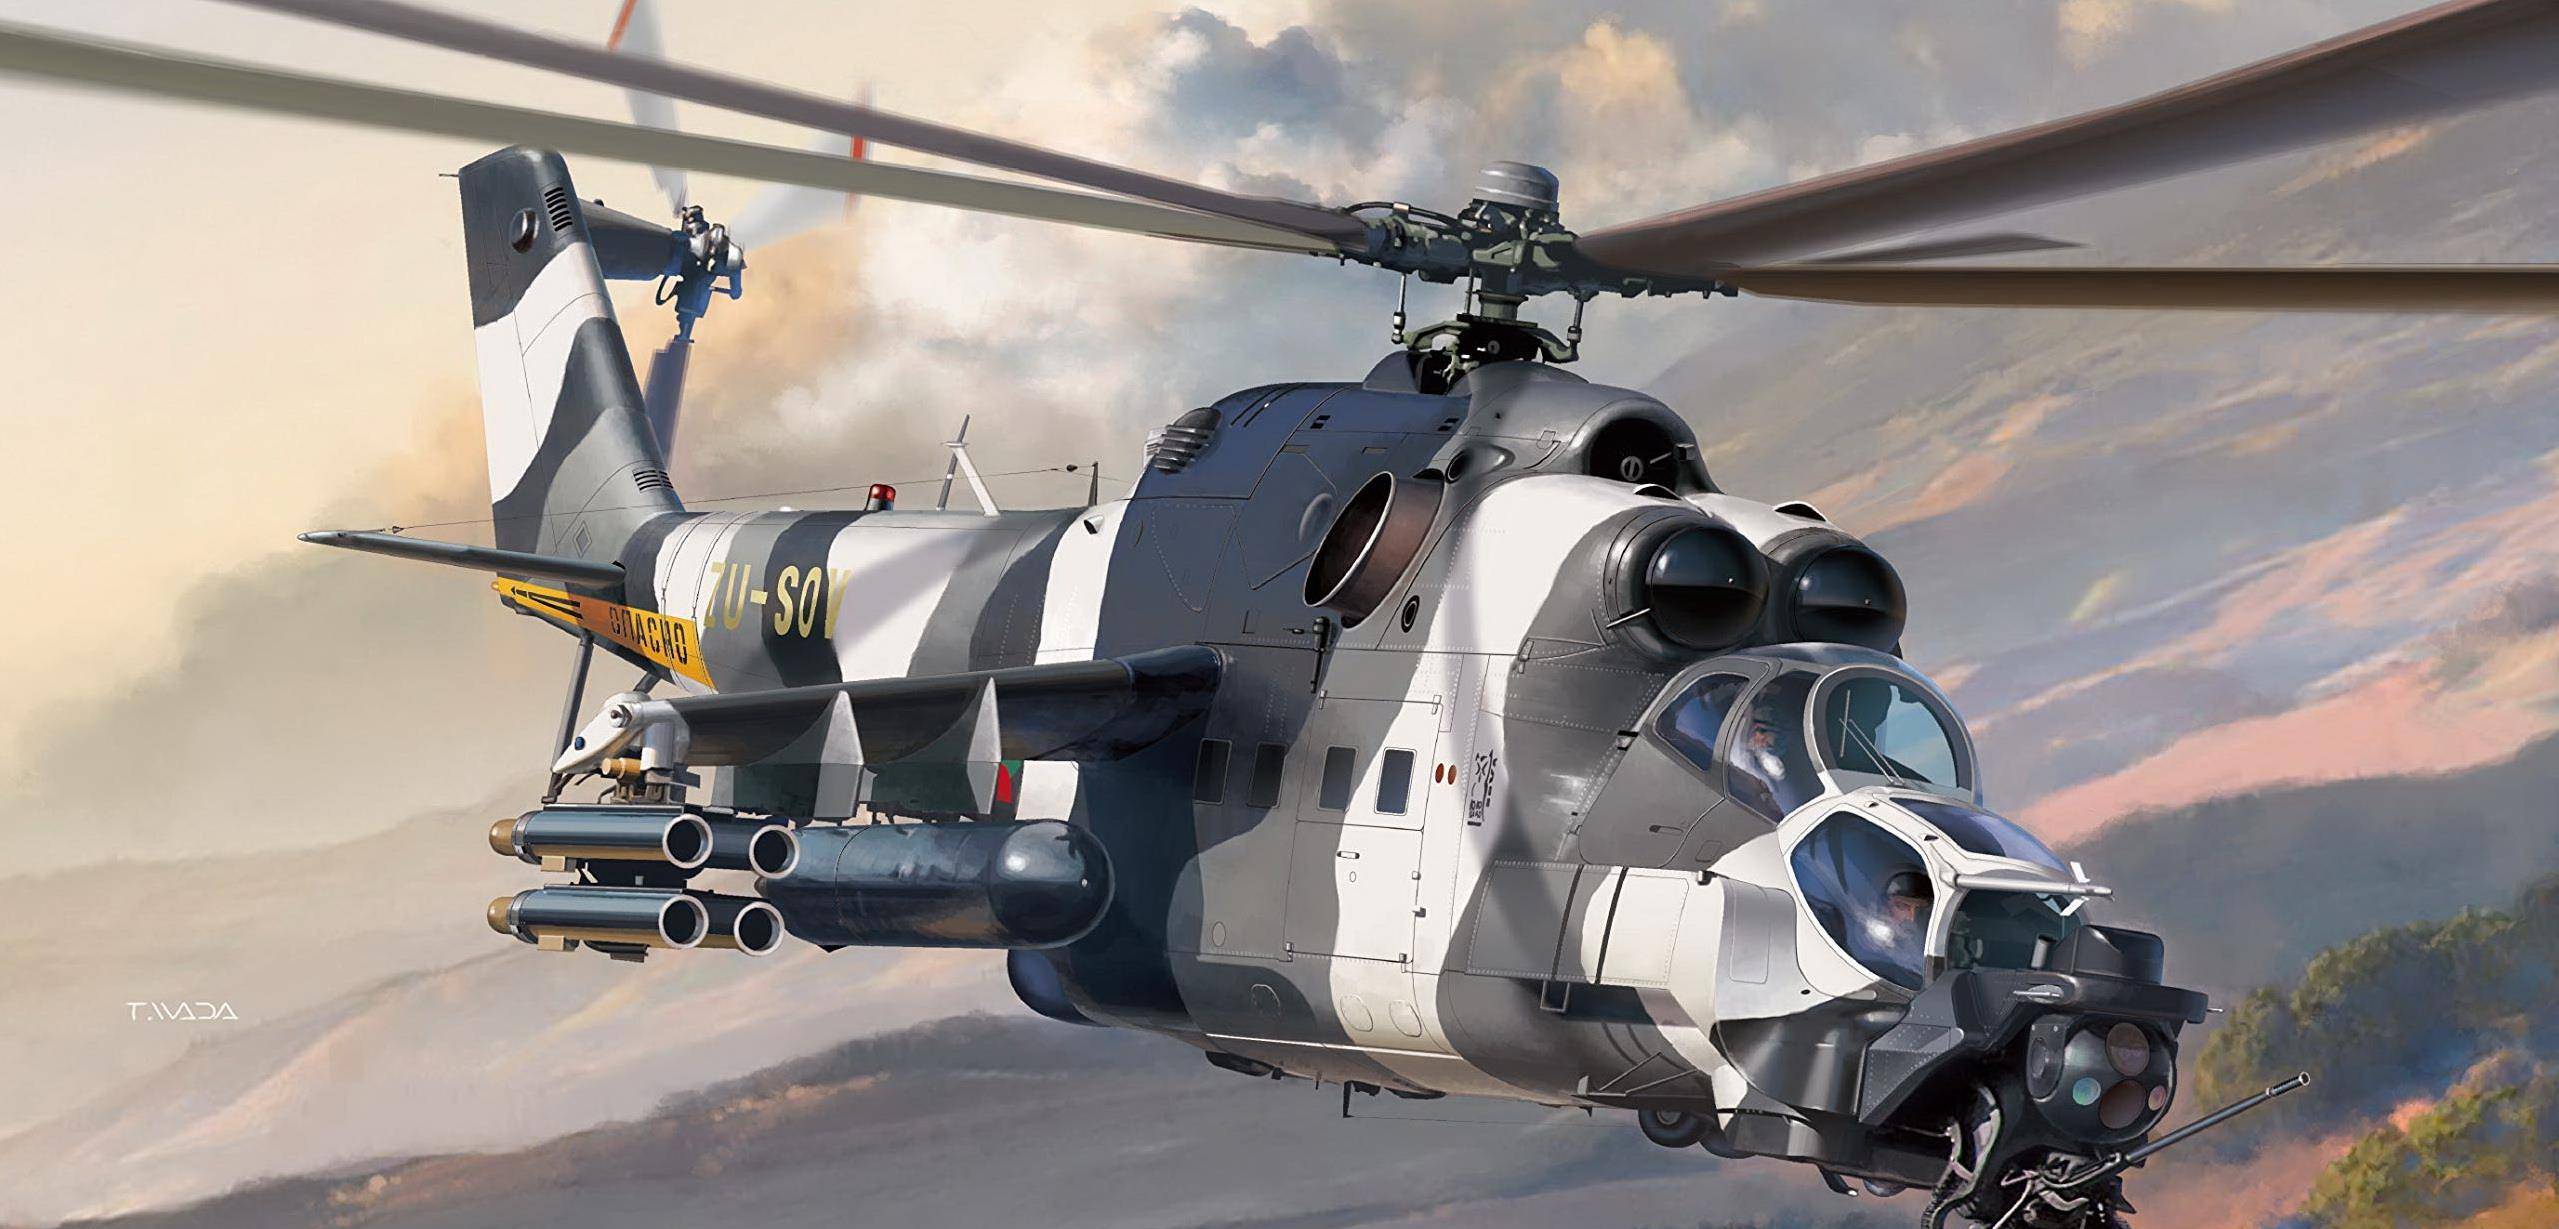 米-24"超级雌鹿"直升机:外形"丑陋邪恶",战斗力堪比怪兽